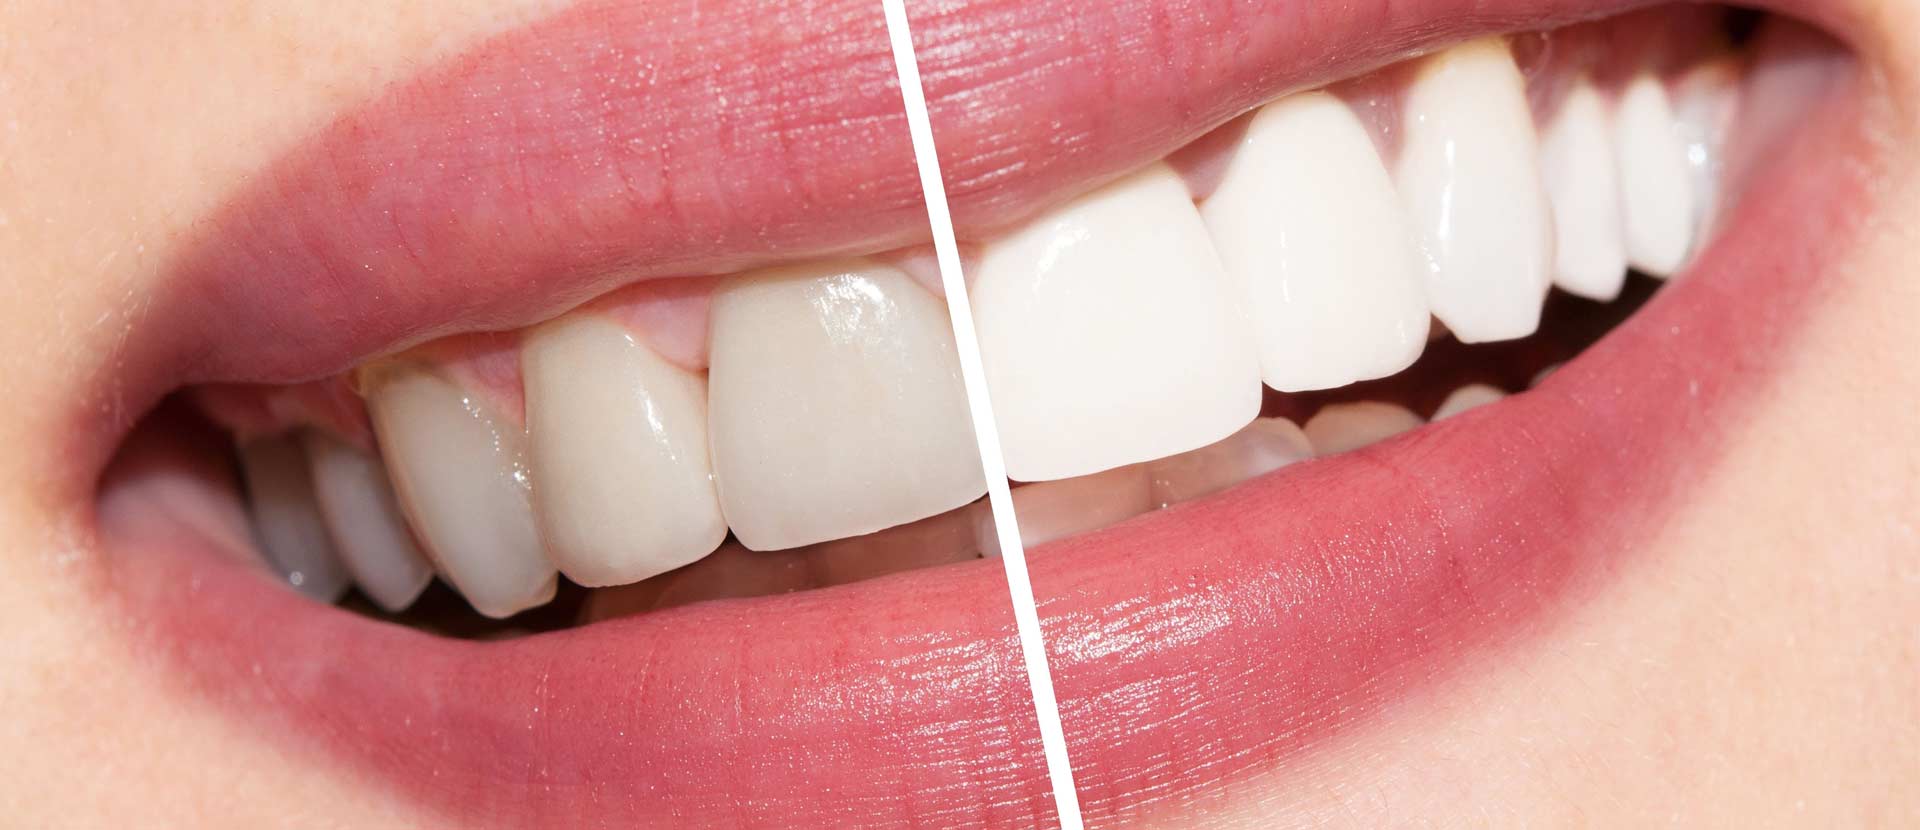 Clareamento Dental, proporciona uma melhora na aparência e auto-estima.